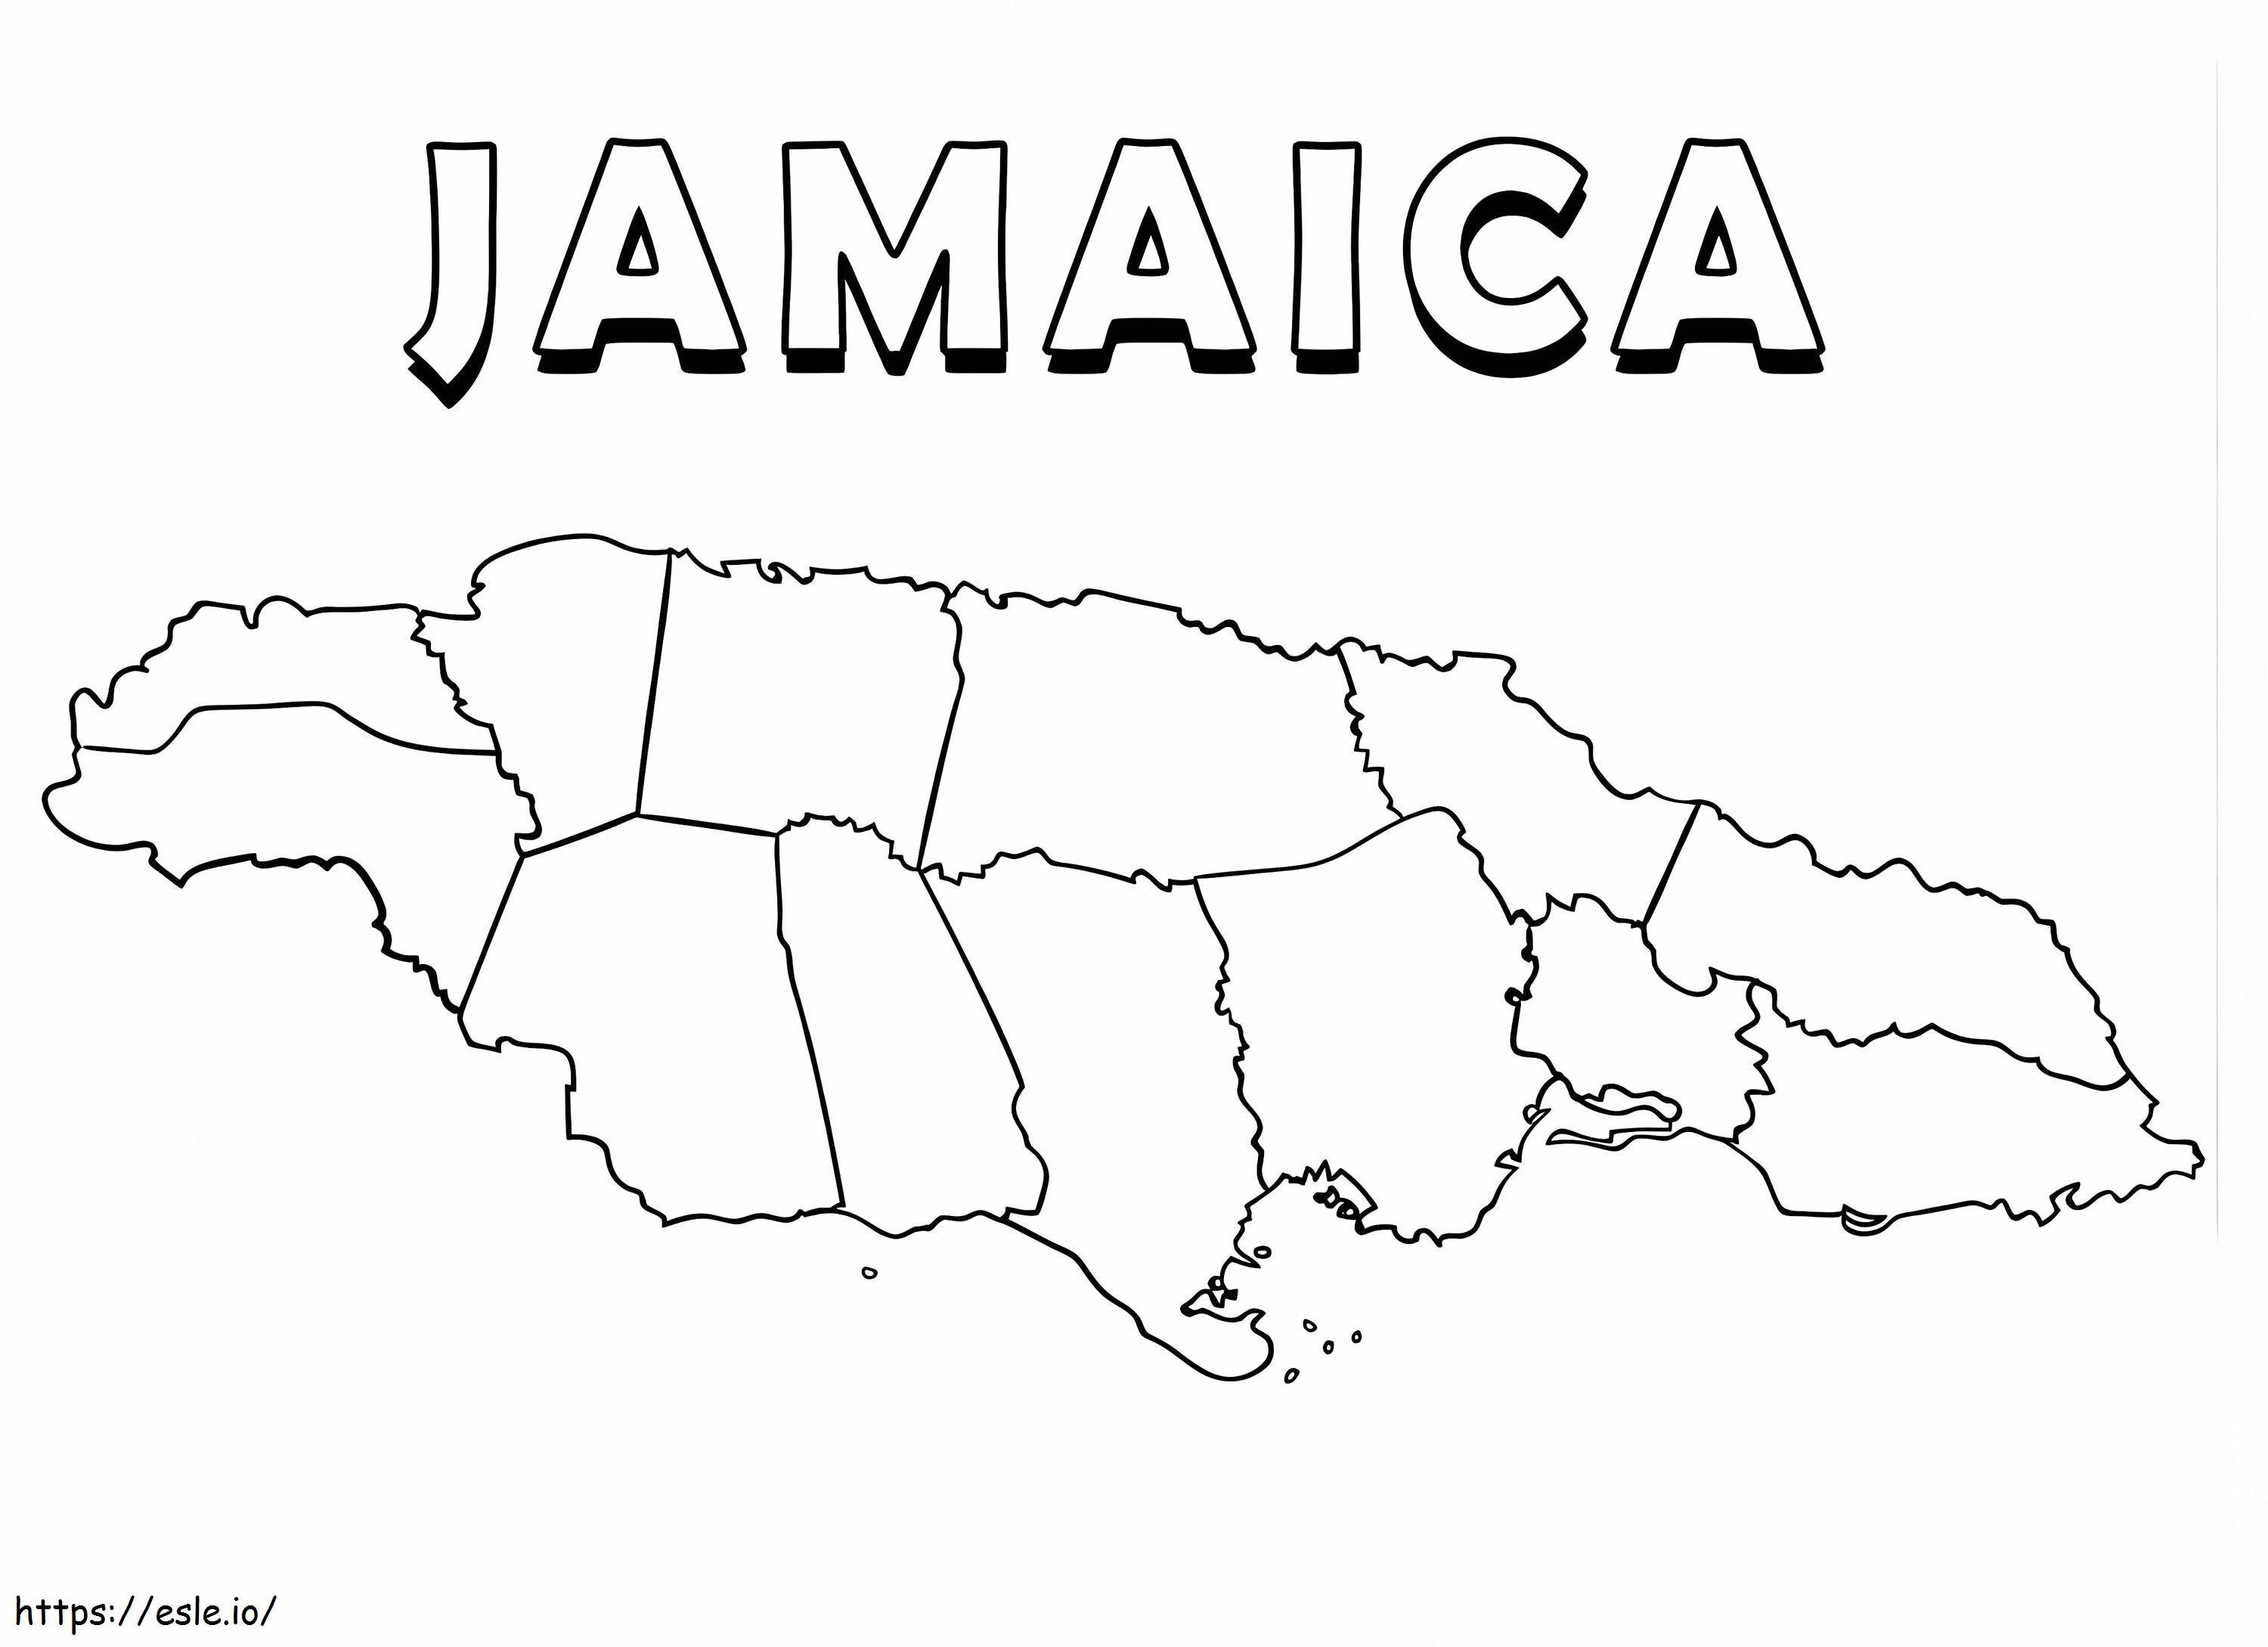 Peta Jamaika yang dapat dicetak Gambar Mewarnai